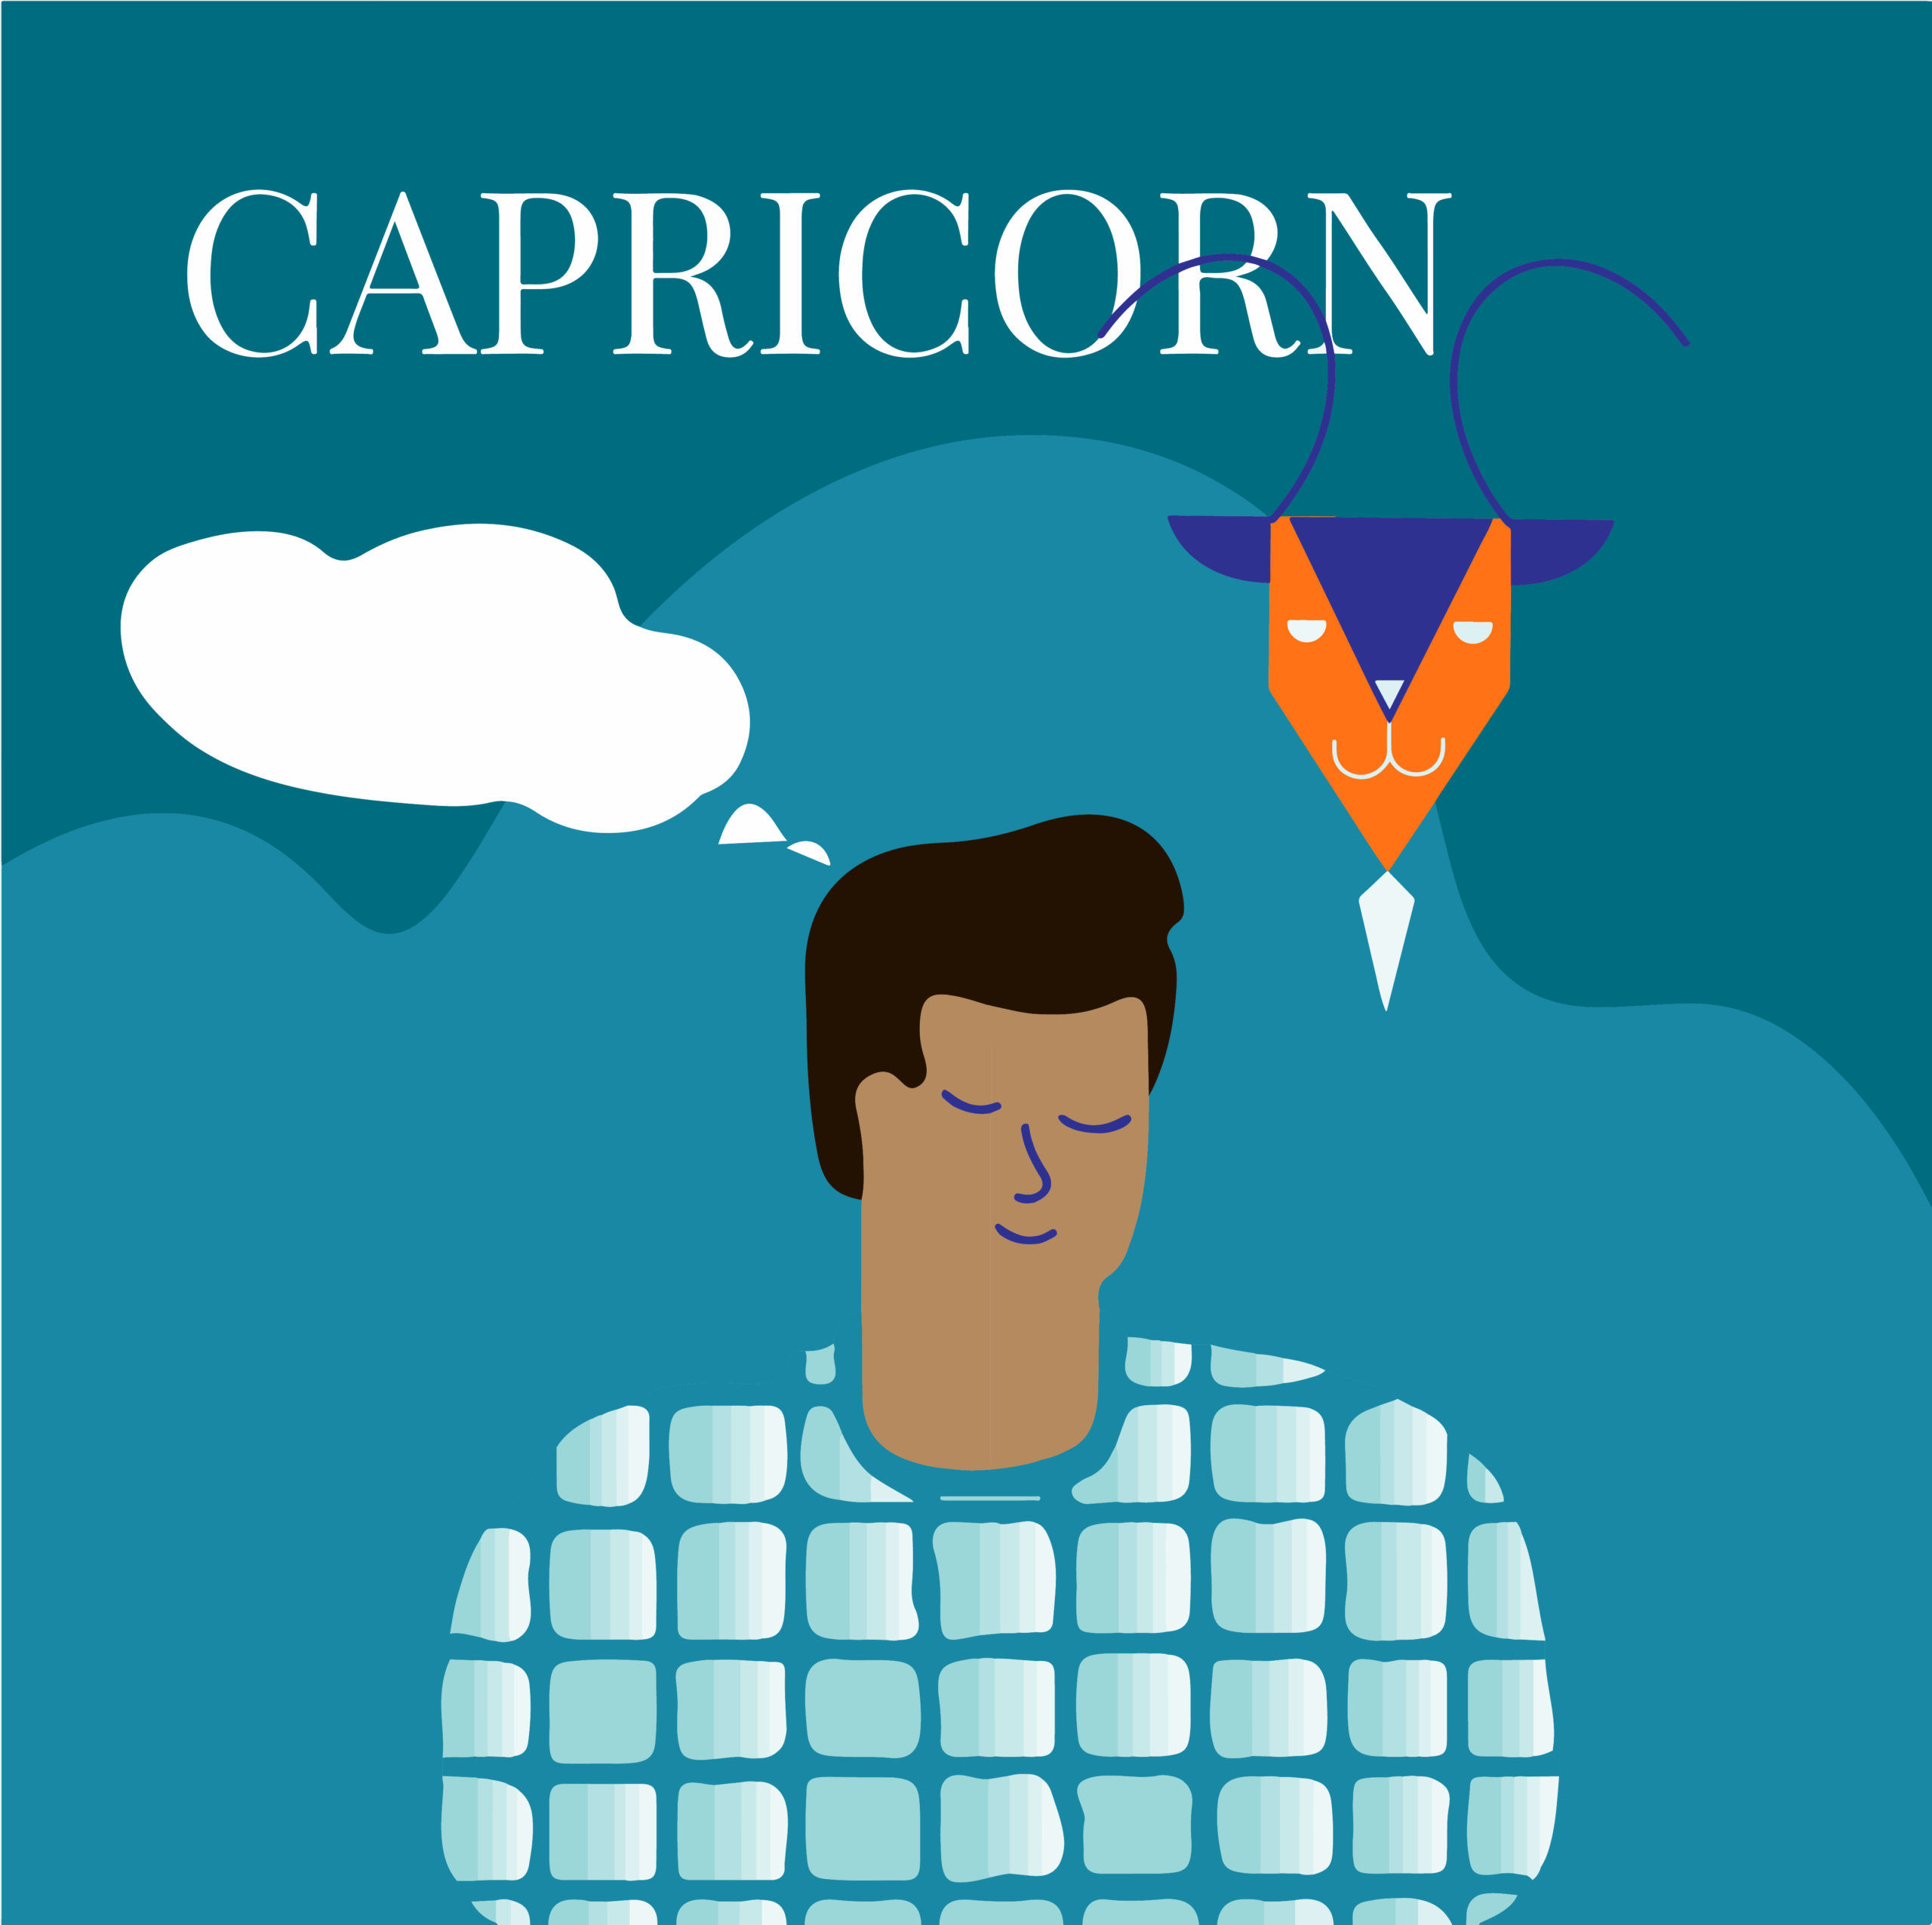 capricorn personality traits